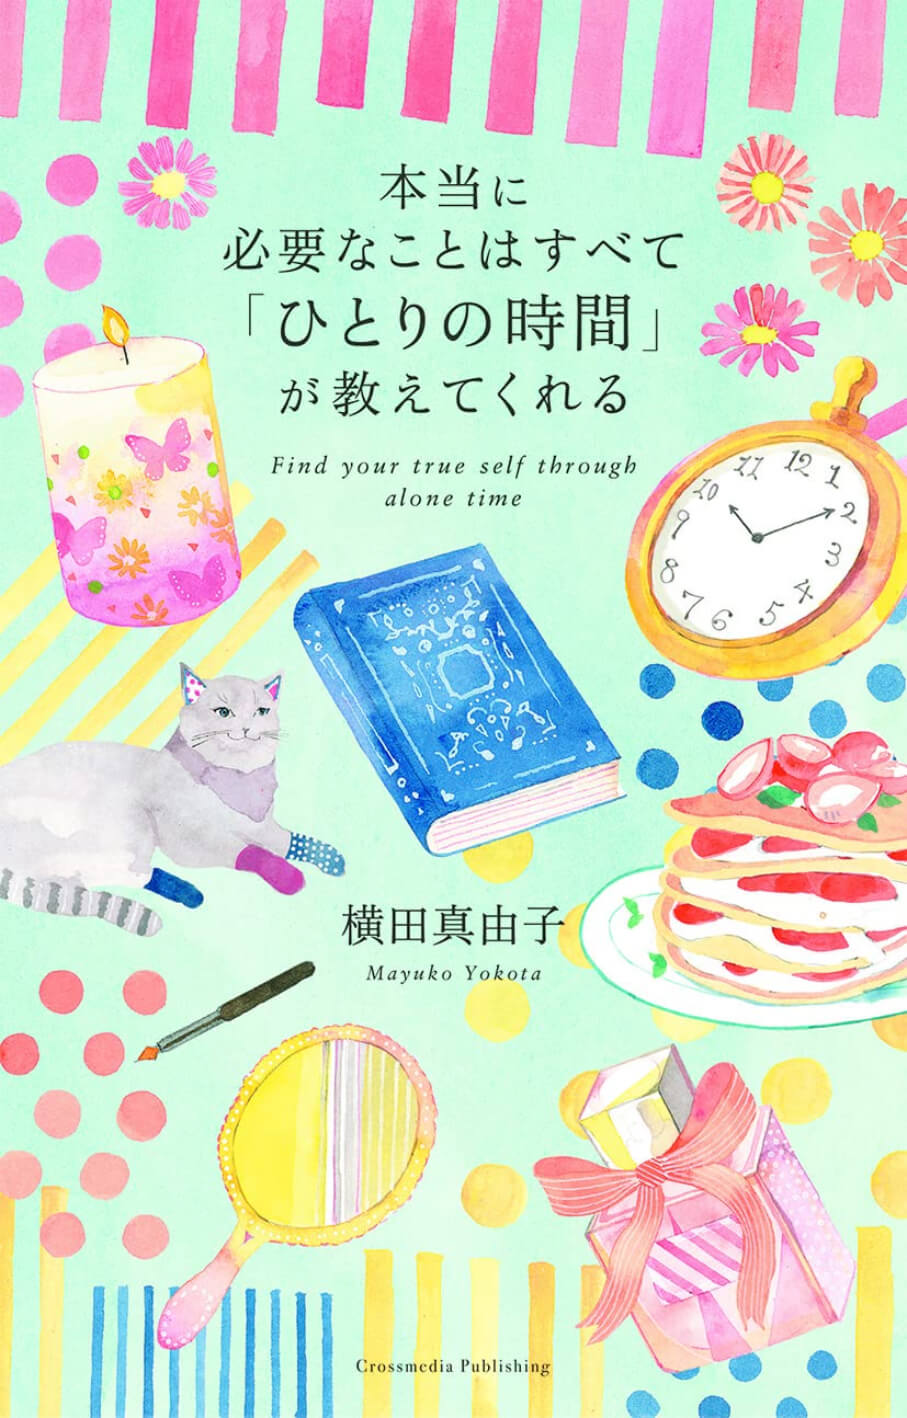 横田真由子の書籍「本当に必要なことはすべて「ひとりの時間」が教えてくれる」